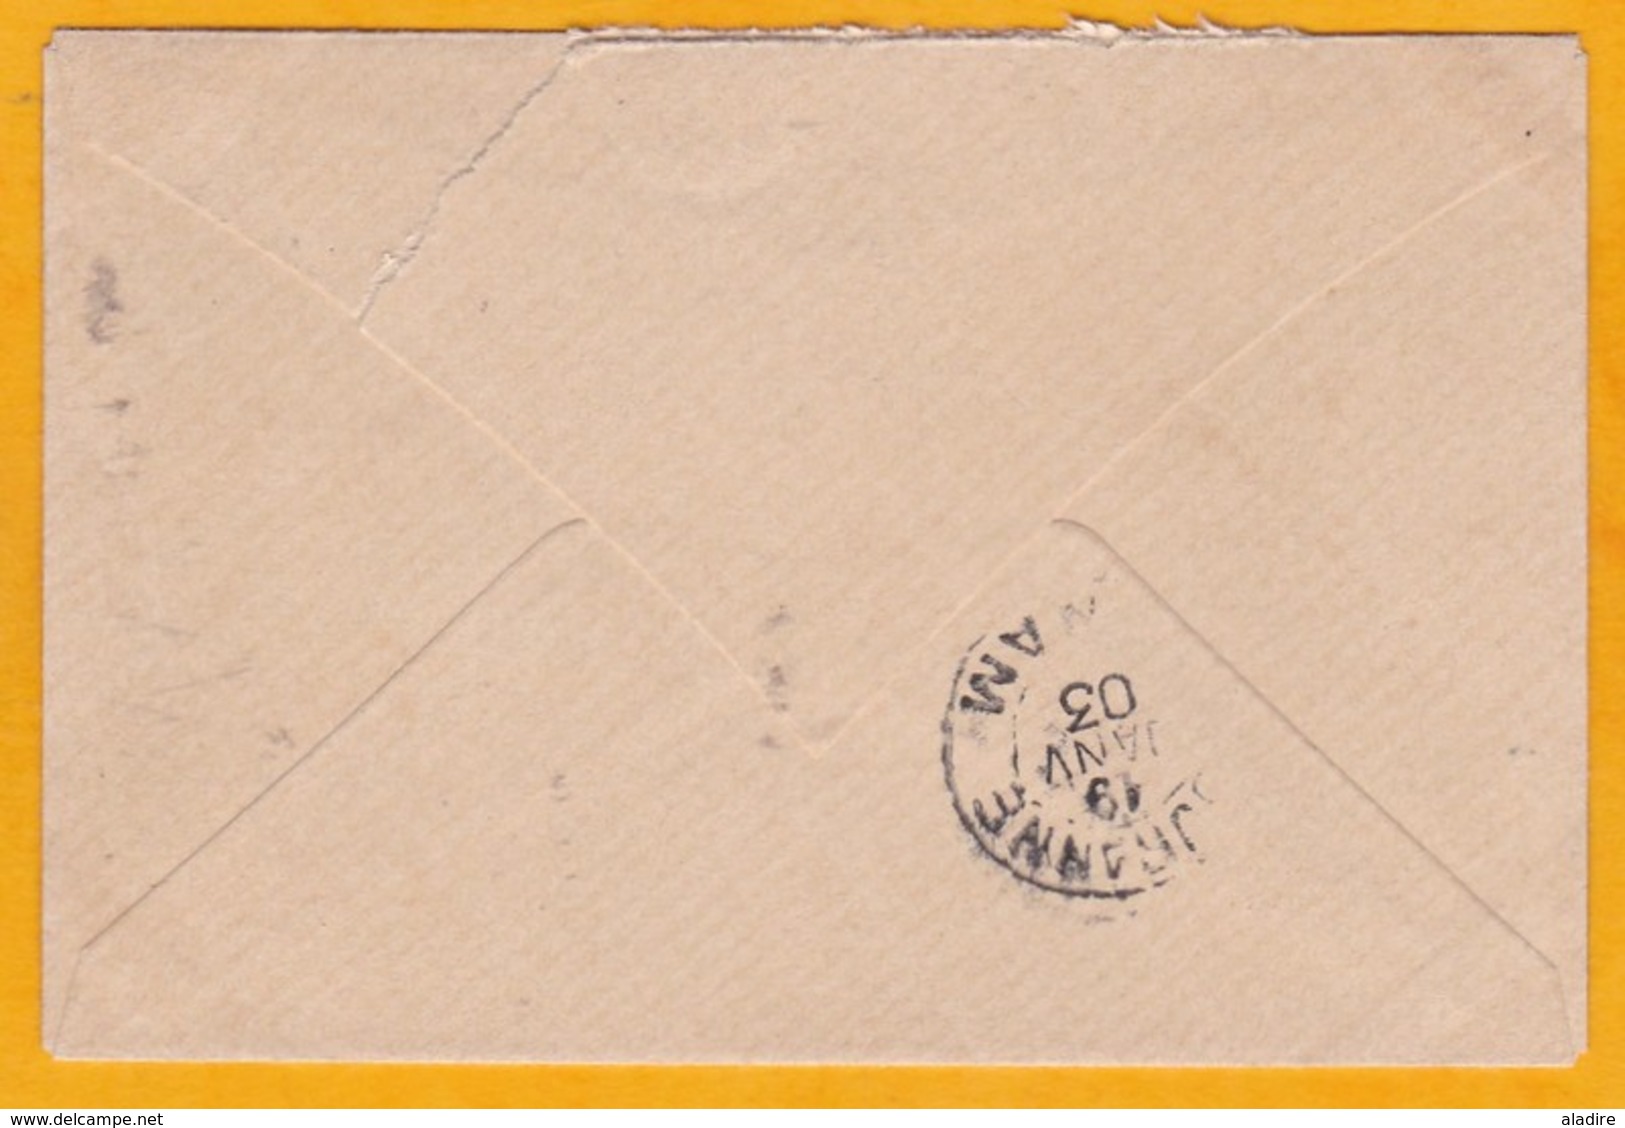 1903 - Entier Postal Enveloppe Mignonnette 5 C Type Groupe De Hanoi, Tonkin Vers Touranne, Annam, Indochine - Covers & Documents